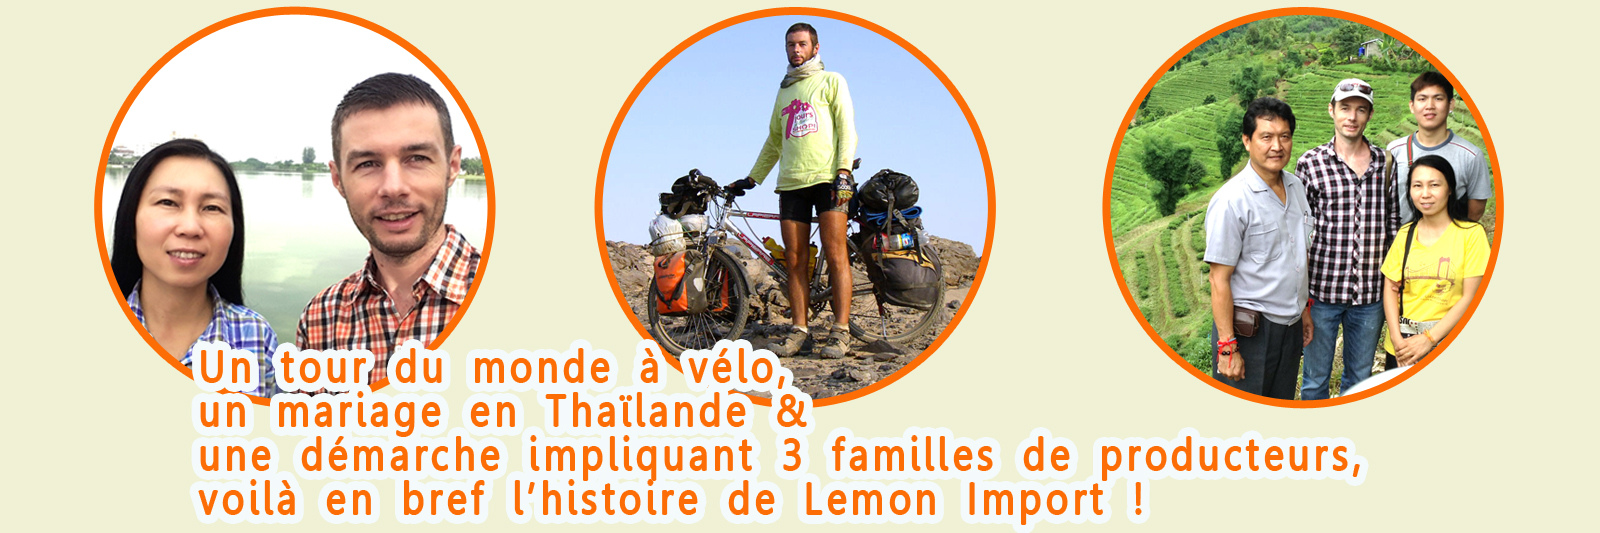 Un tour du monde à vélo, un mariage en Thaïlande et une démarche avec 3 producteurs thaïlandais : c'est Lemon Import, le projet de Junthana & Clément Pluchery